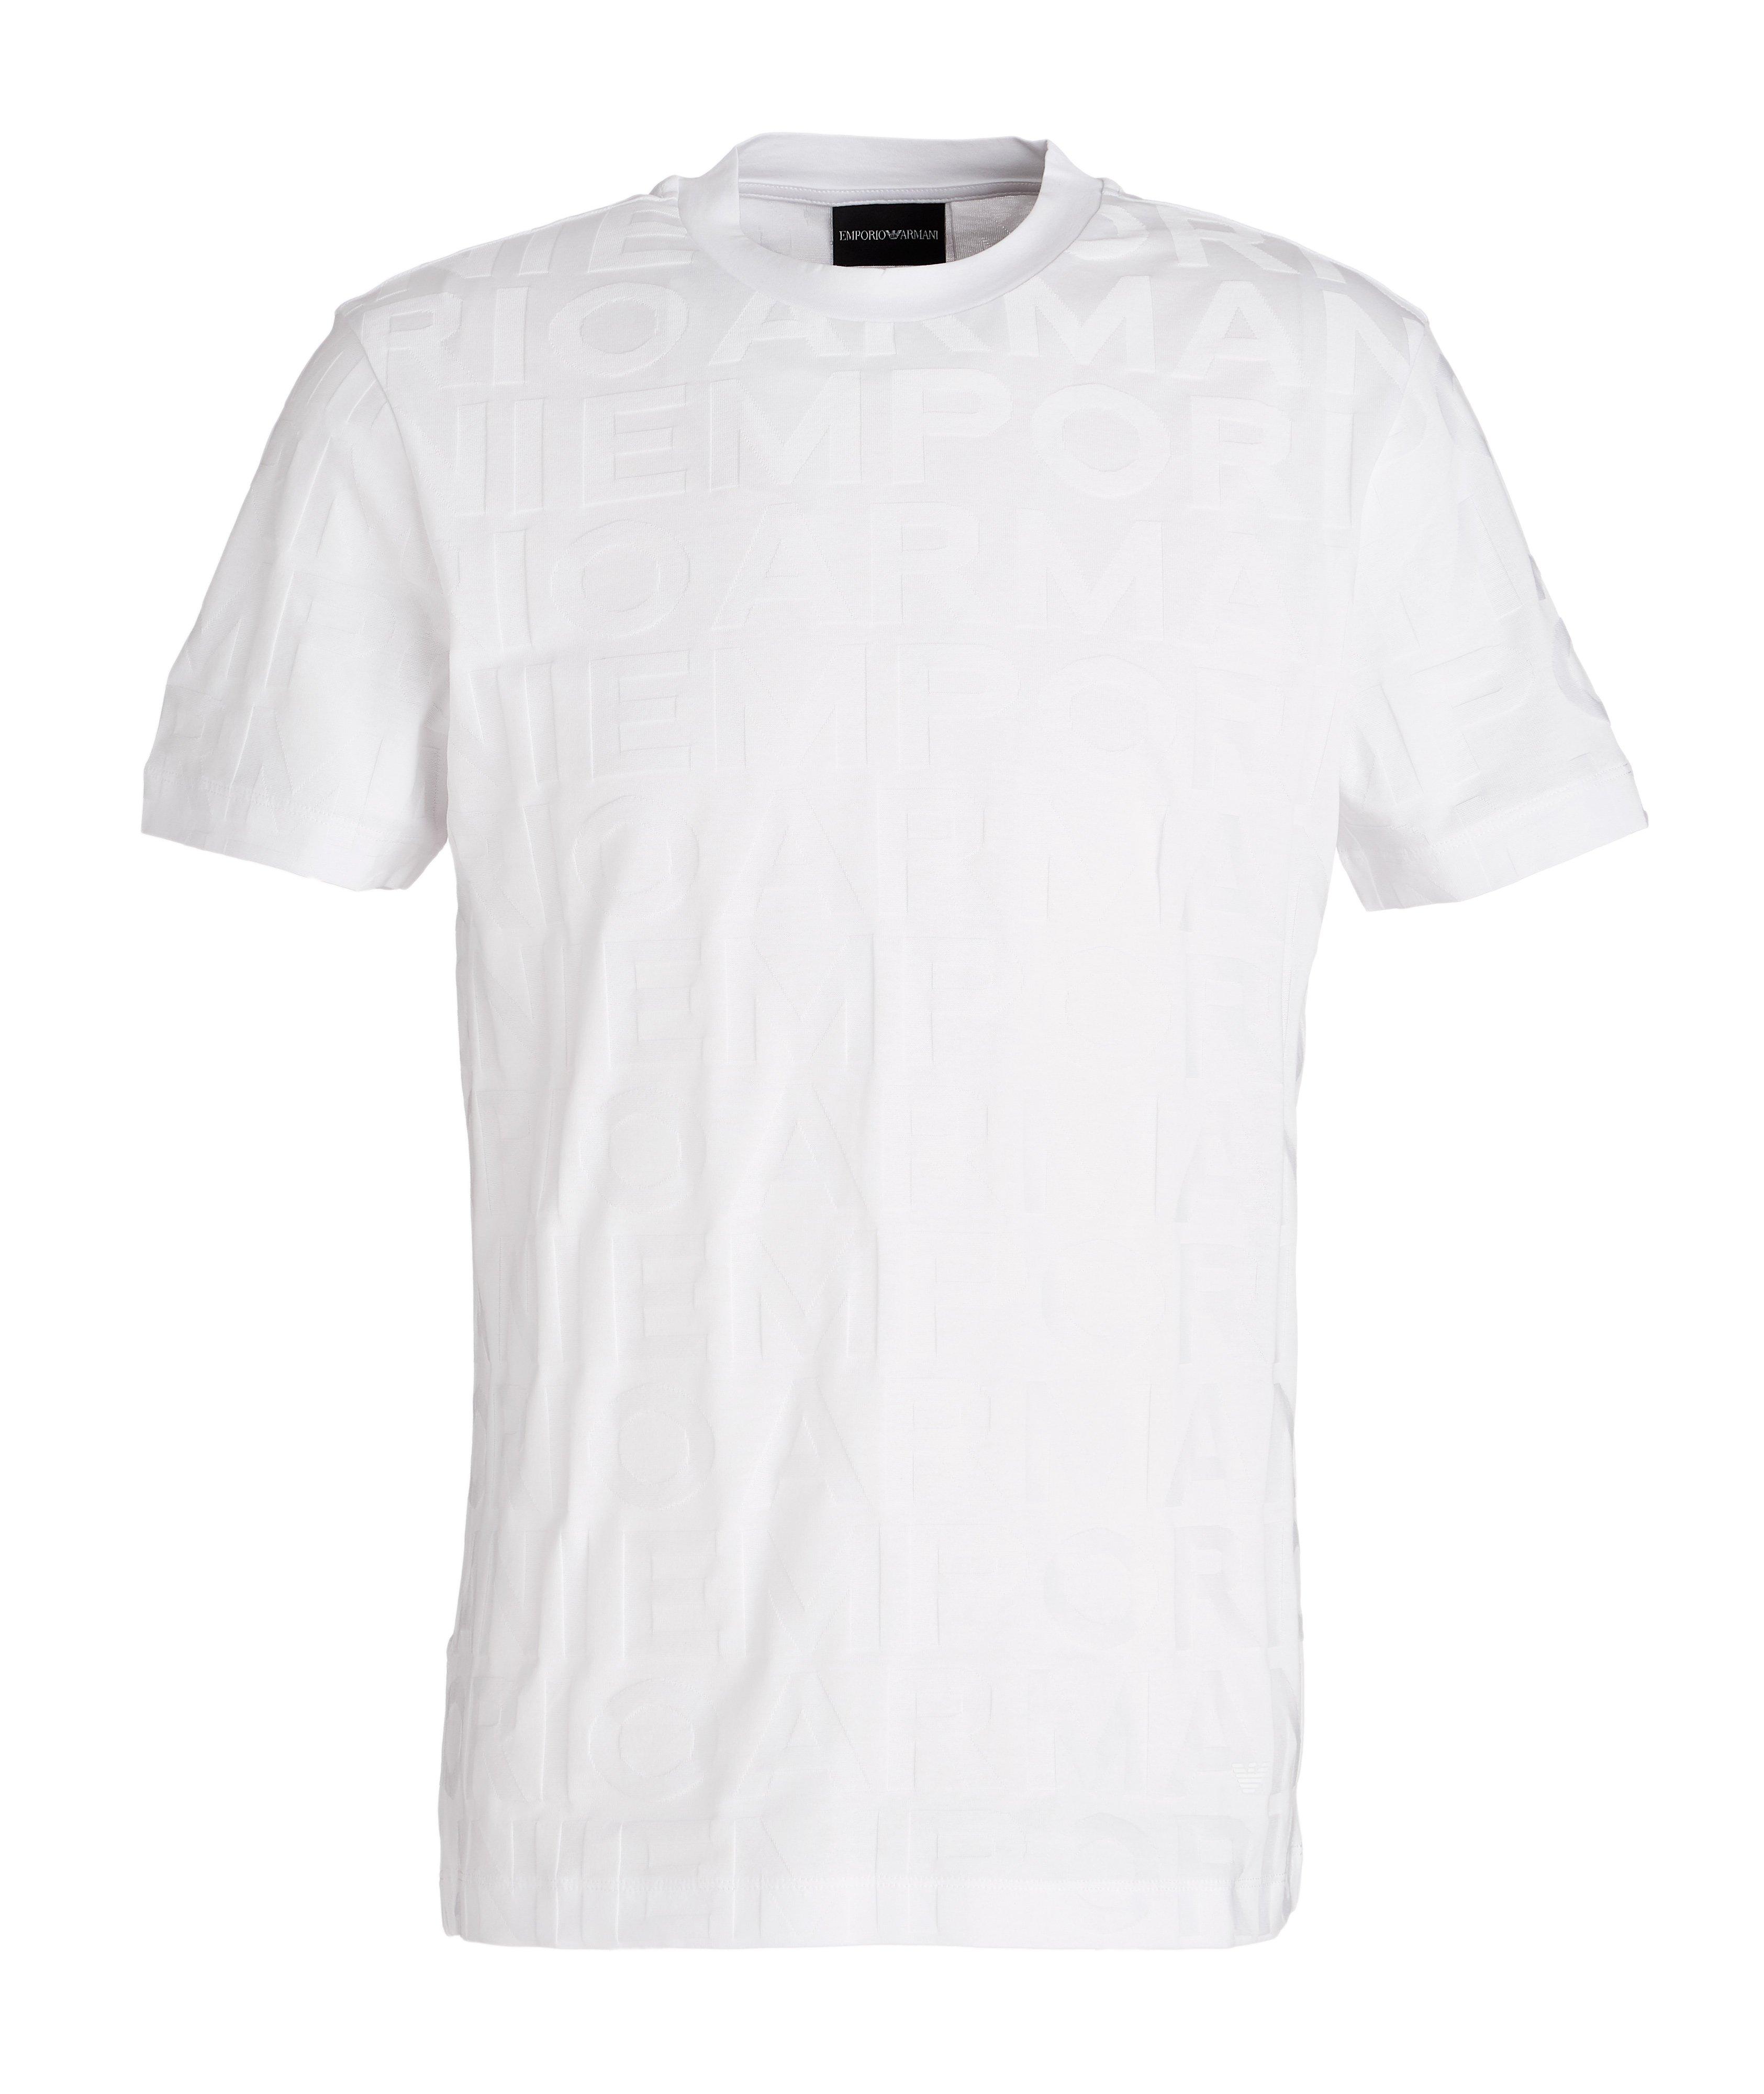 T-shirt en coton avec lettrage image 0